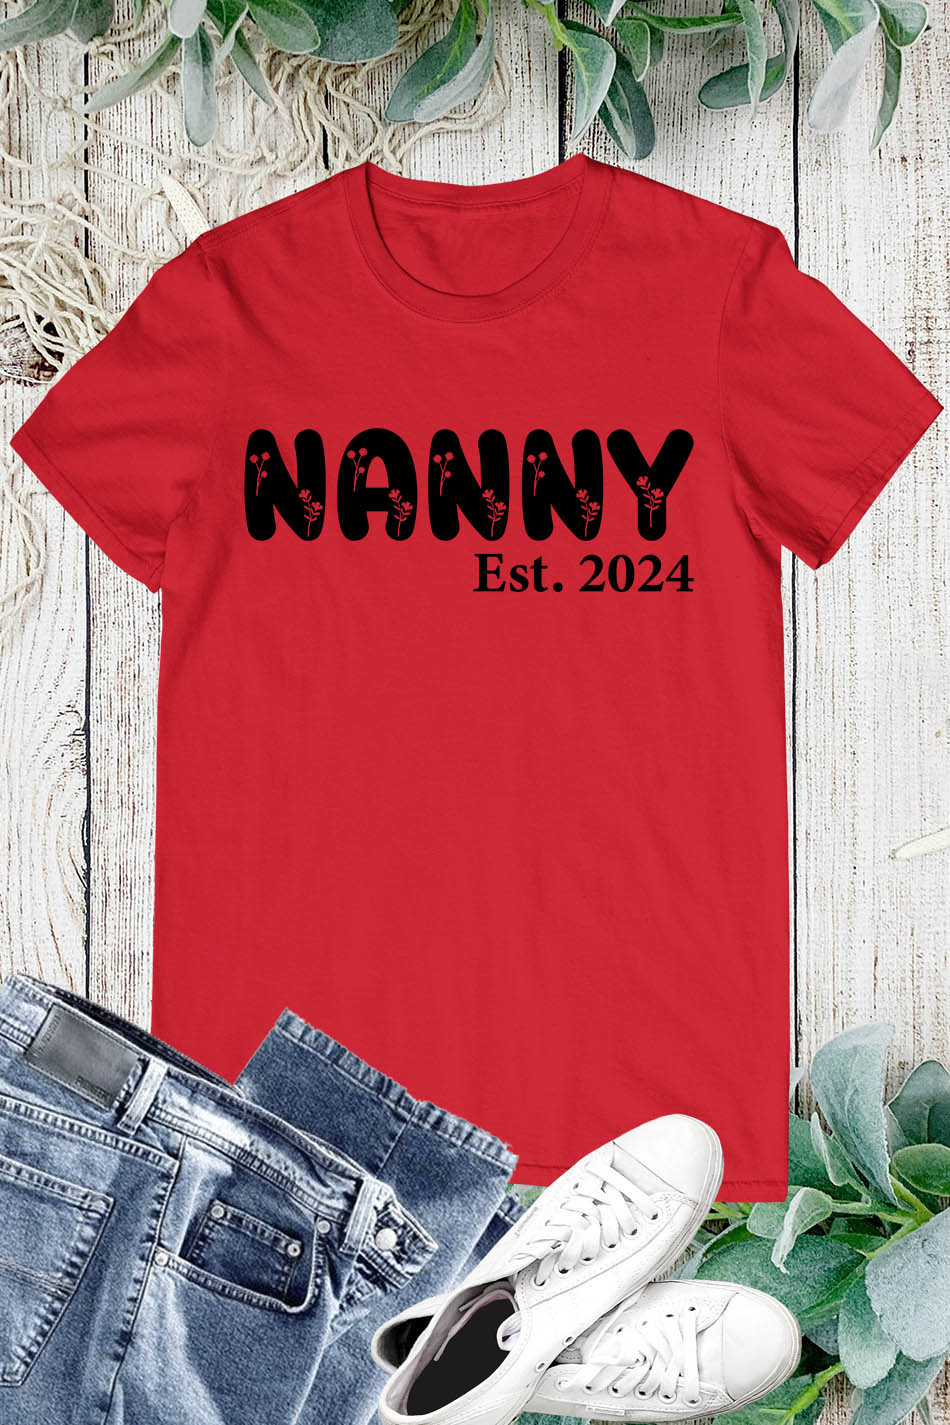 Floral Nanny Established 2024 Shirt